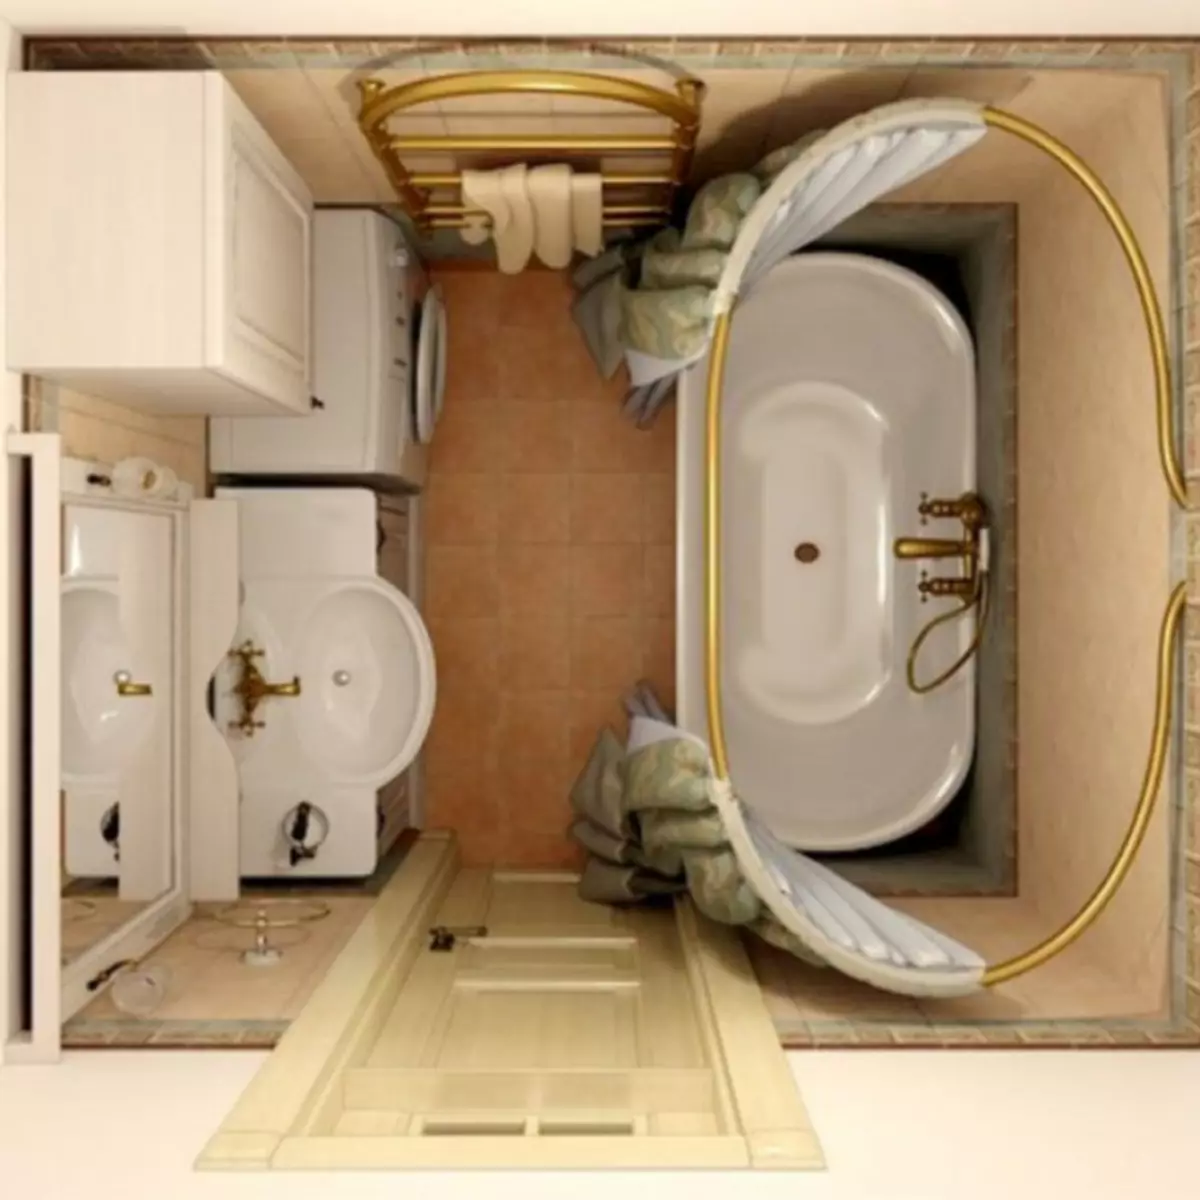 Kamar mandi 3 meter persegi. m. - 80 foto contoh desain terbaik